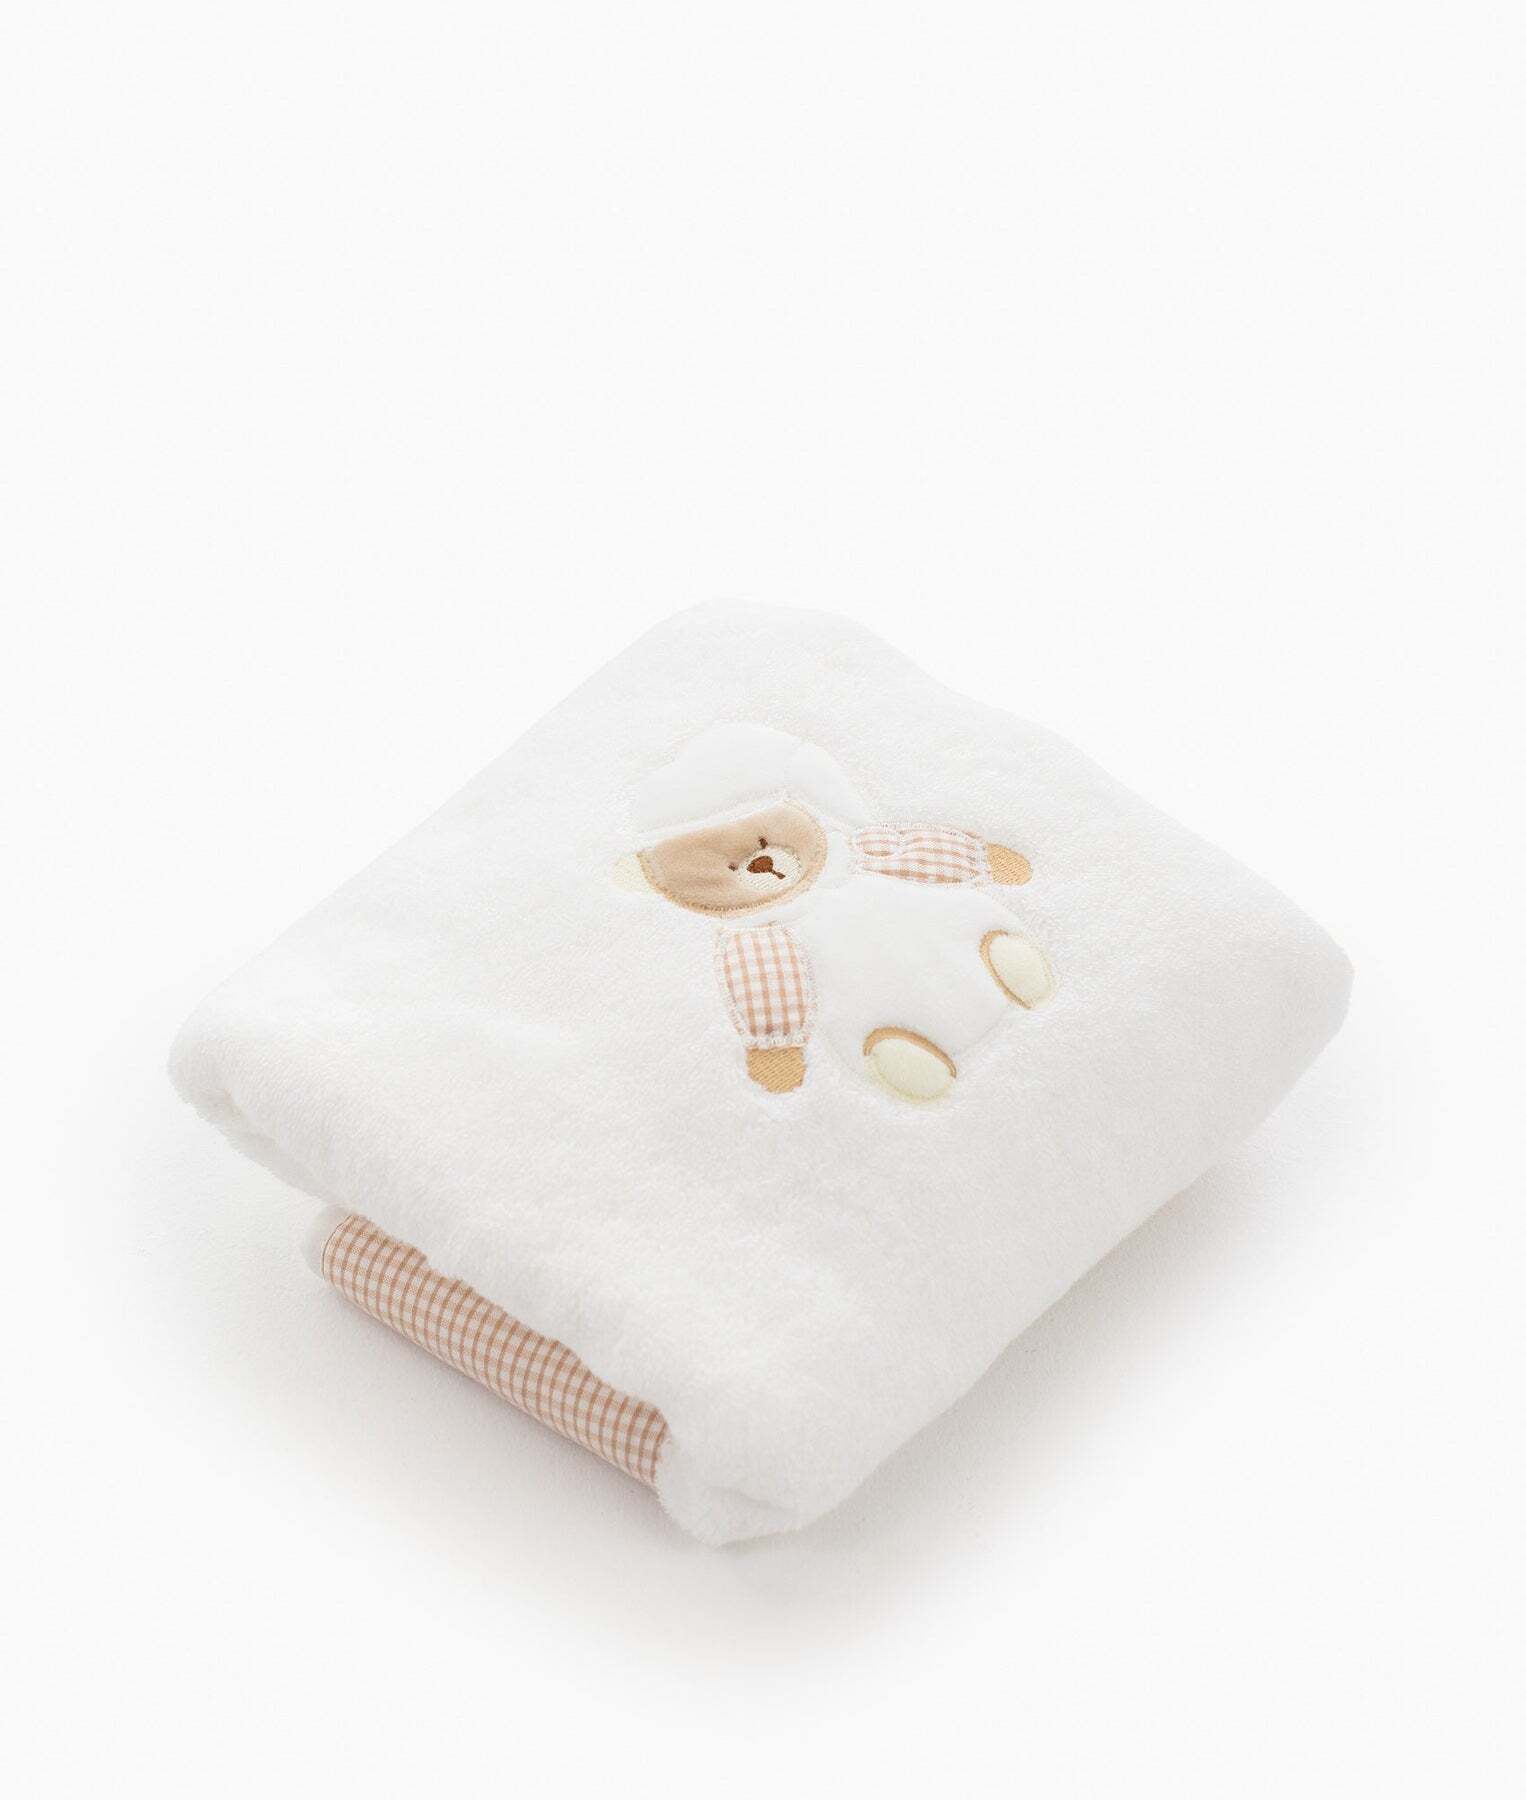 bear-towel-rattle-set-beige-137_1800x1800